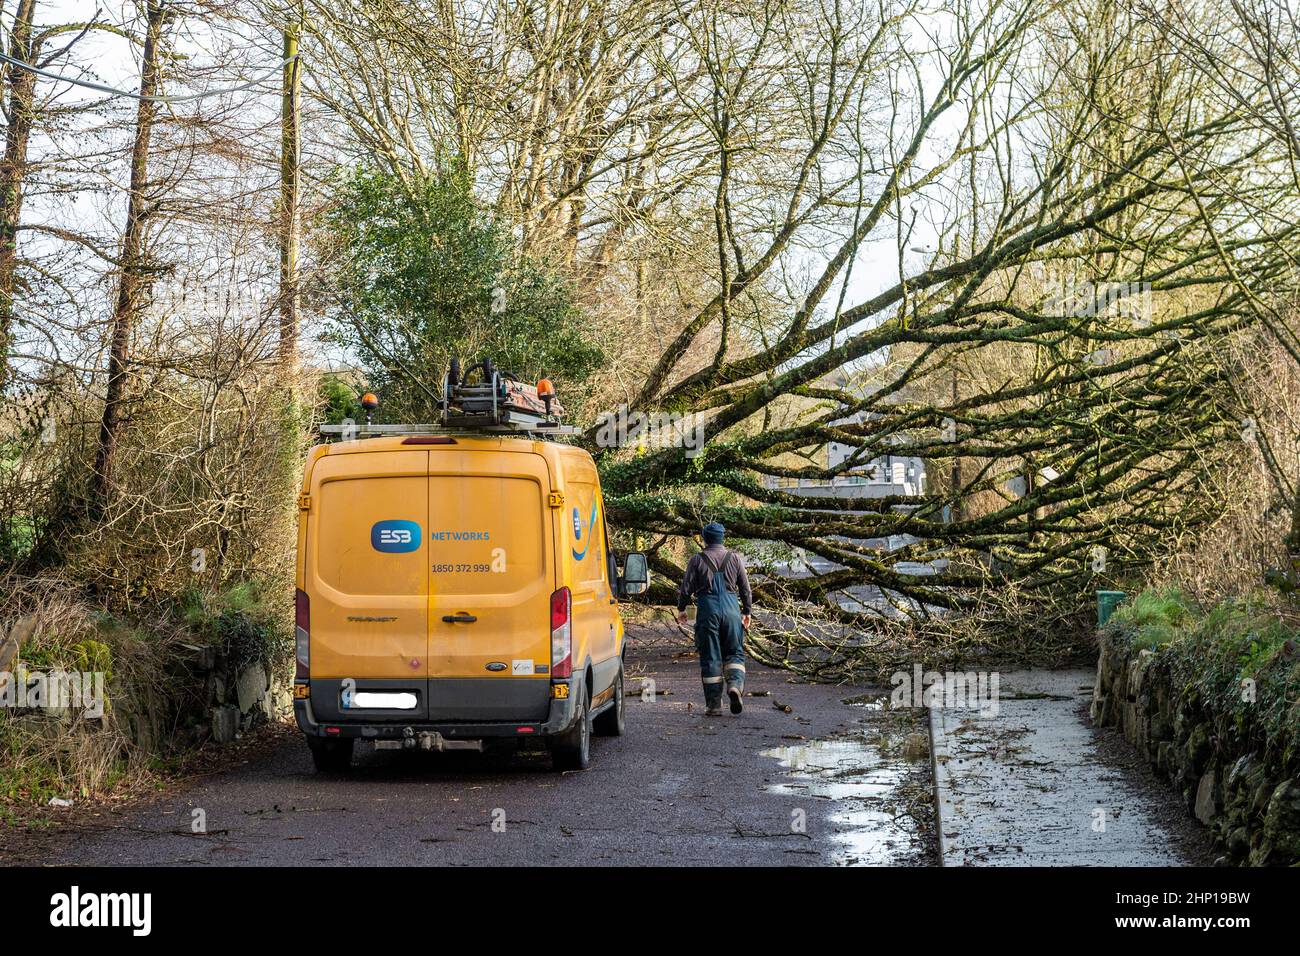 Dunmanway. Oeste de Cork, Irlanda. 18th Feb, 2022. Un árbol cayó cerca del Hospital Dunmanway durante la tormenta Eunice hoy, bloqueando completamente la carretera. El ESB llegó a escena para ocuparse de los cables eléctricos caídos. Crédito: AG News/Alamy Live News Foto de stock